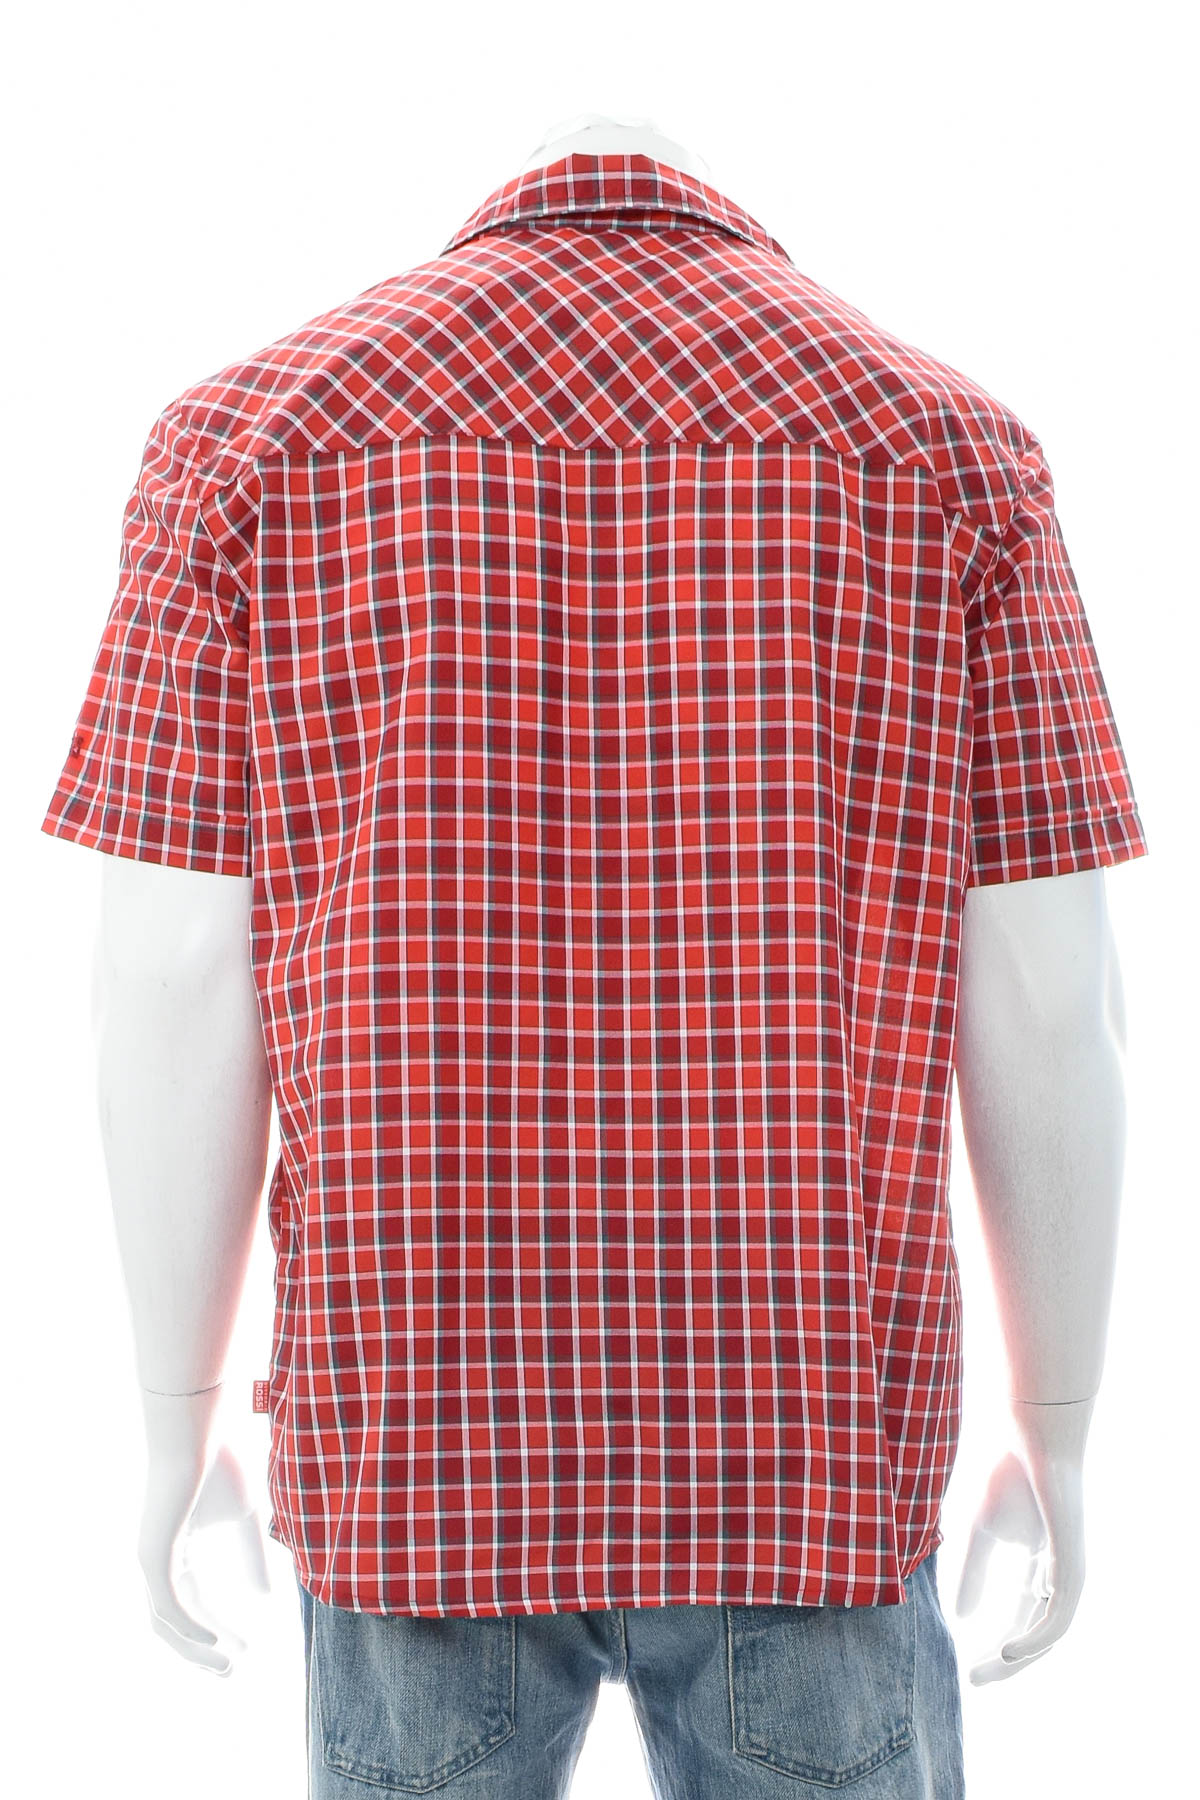 Ανδρικό πουκάμισο - Vittorio Rossi - 1